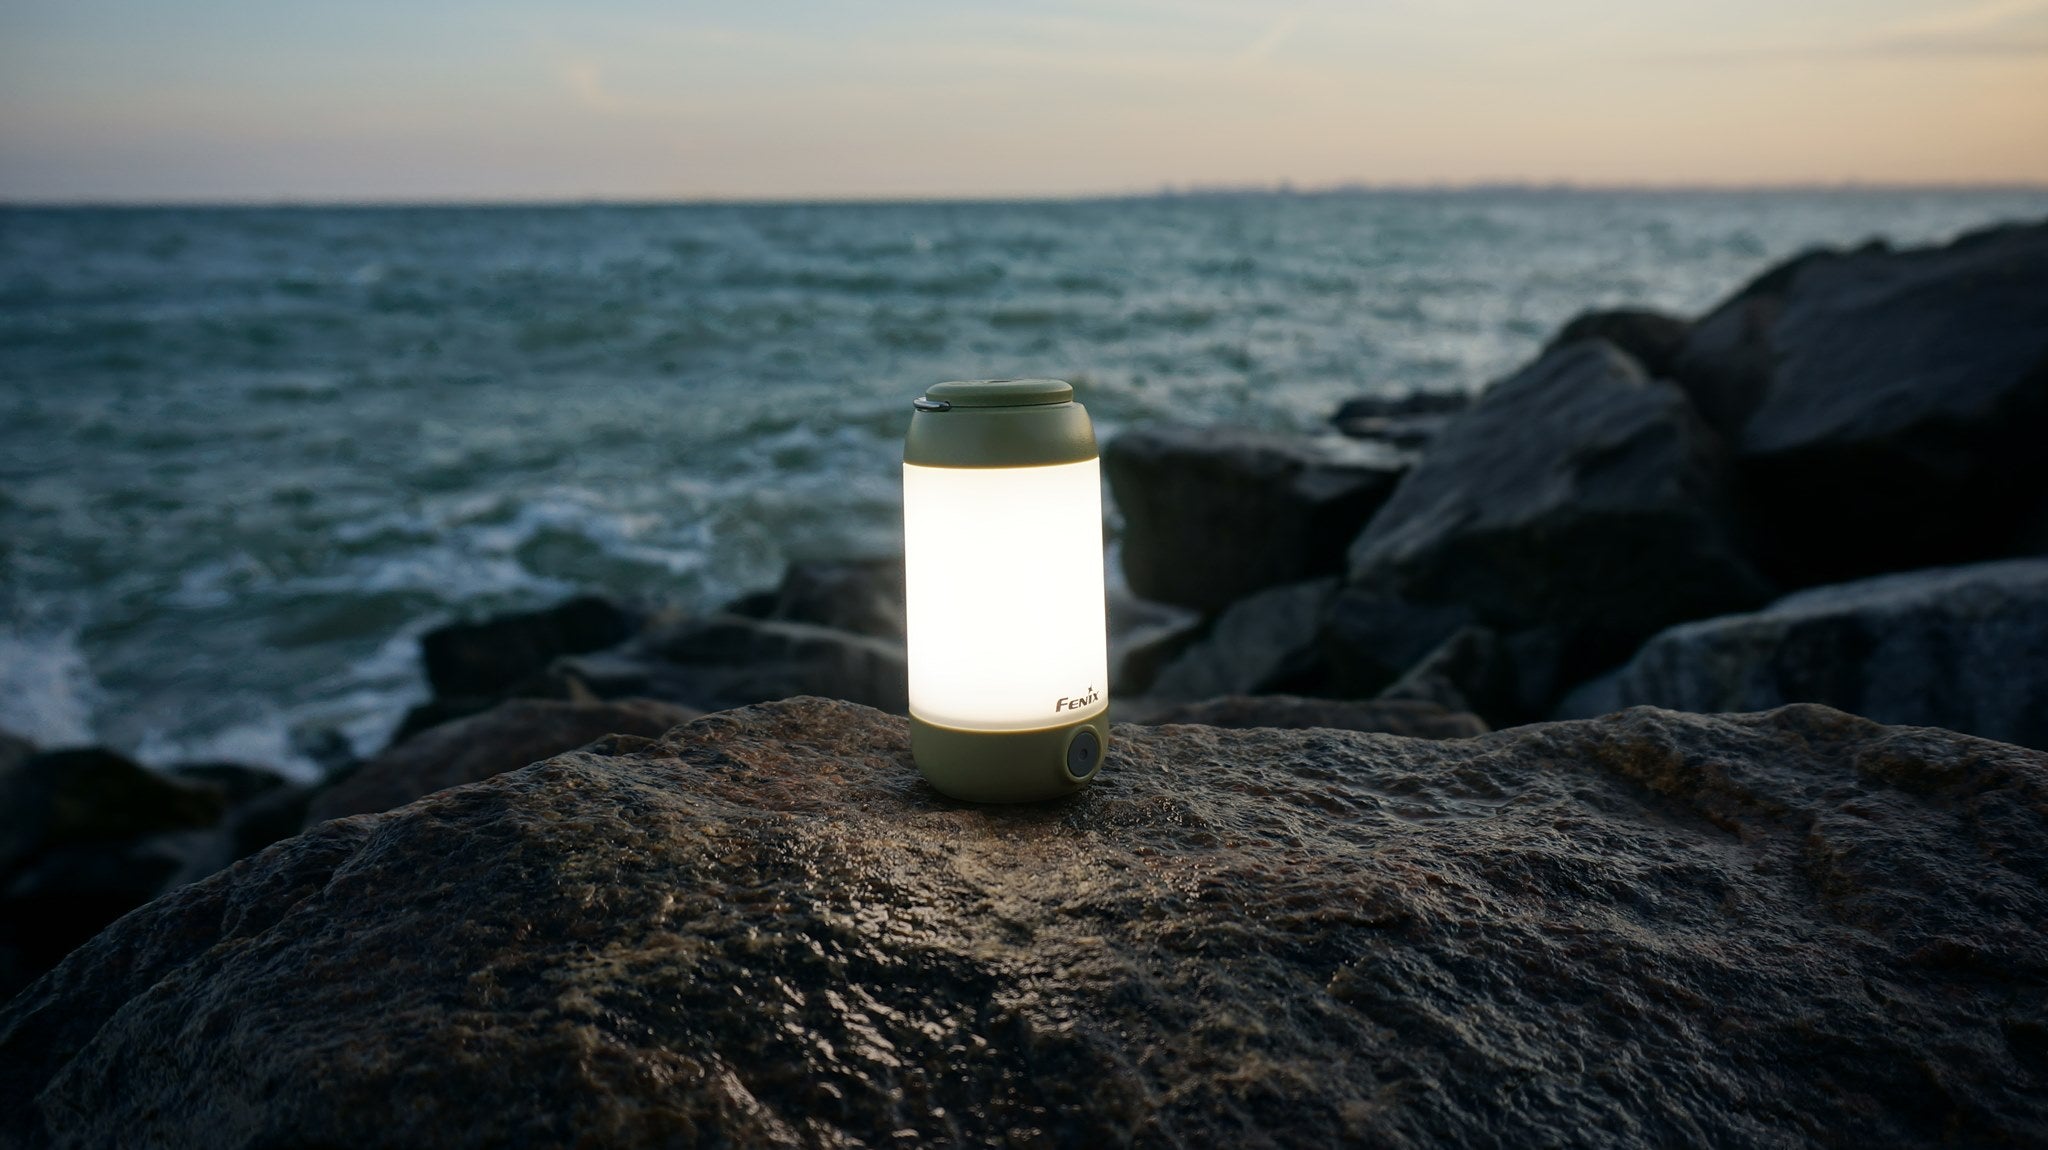 Lampe Fenix CL26R - lanterne de camping rechargeable 400 Lumens – Revendeur  Officiel Lampes FENIX depuis 2008